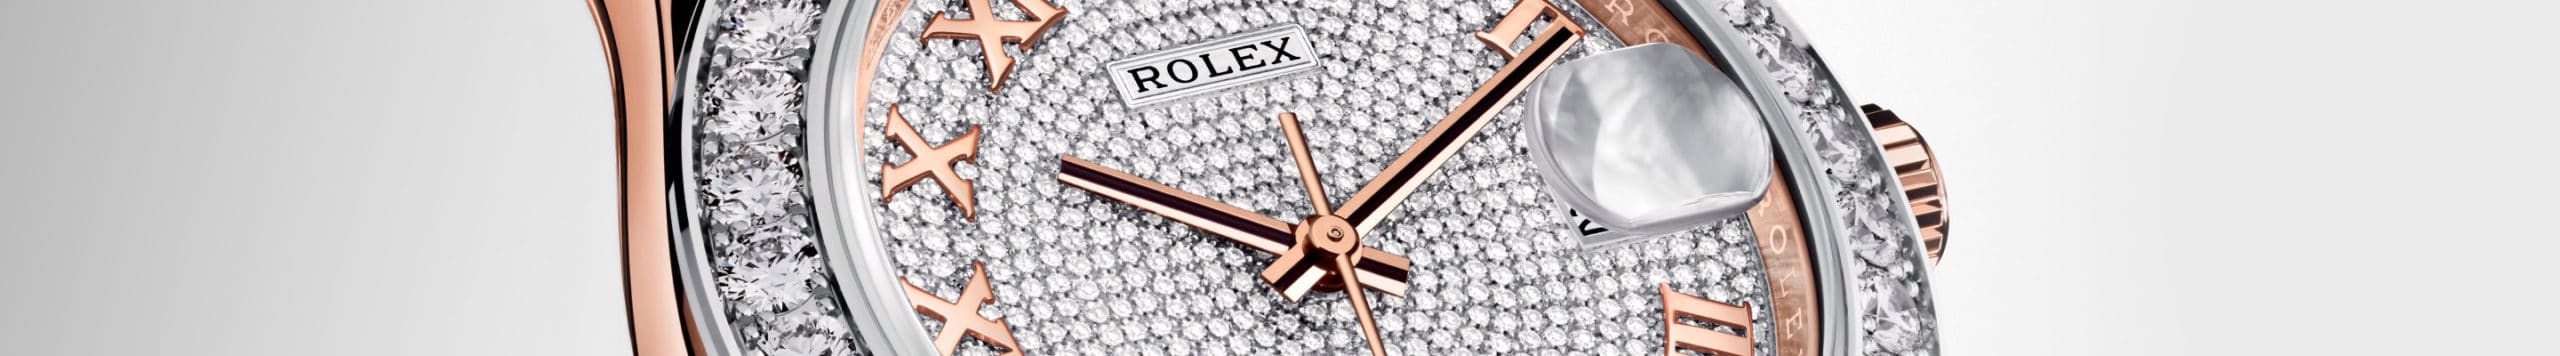 นาฬิกา Rolex Pearlmaster ที่ ไทม์ ไมดาส สยามพารากอน